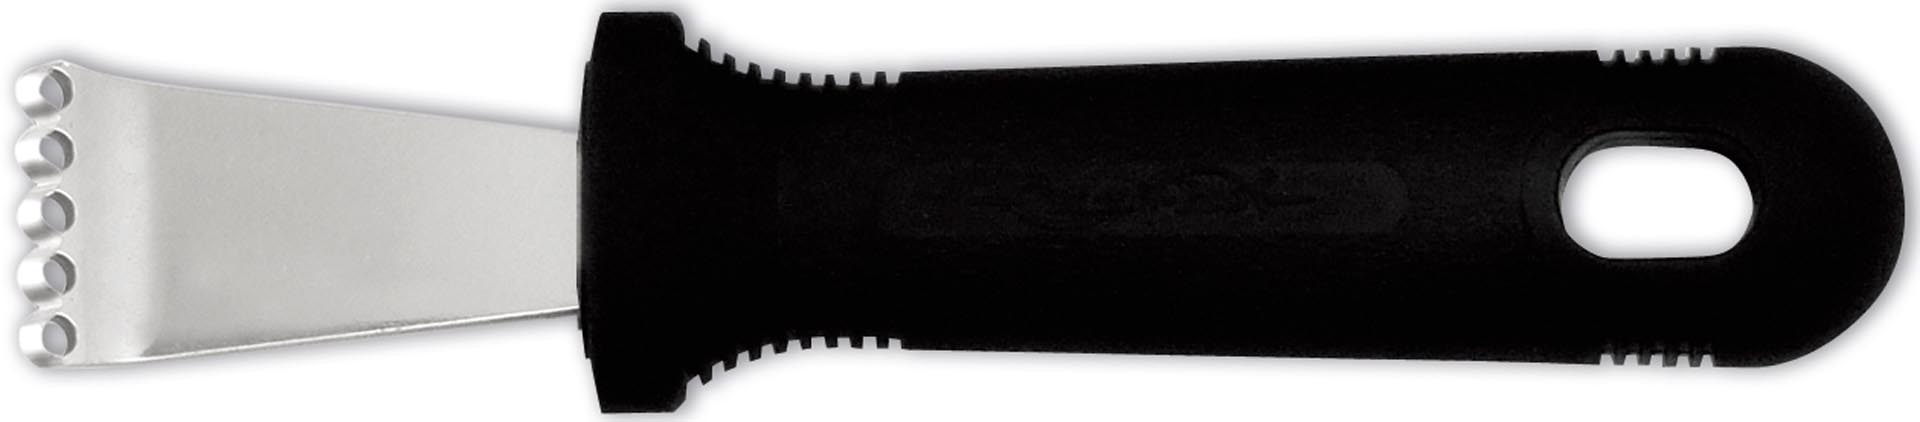 Juliennereißer, Edelstahl, 20 mm breit # 13716